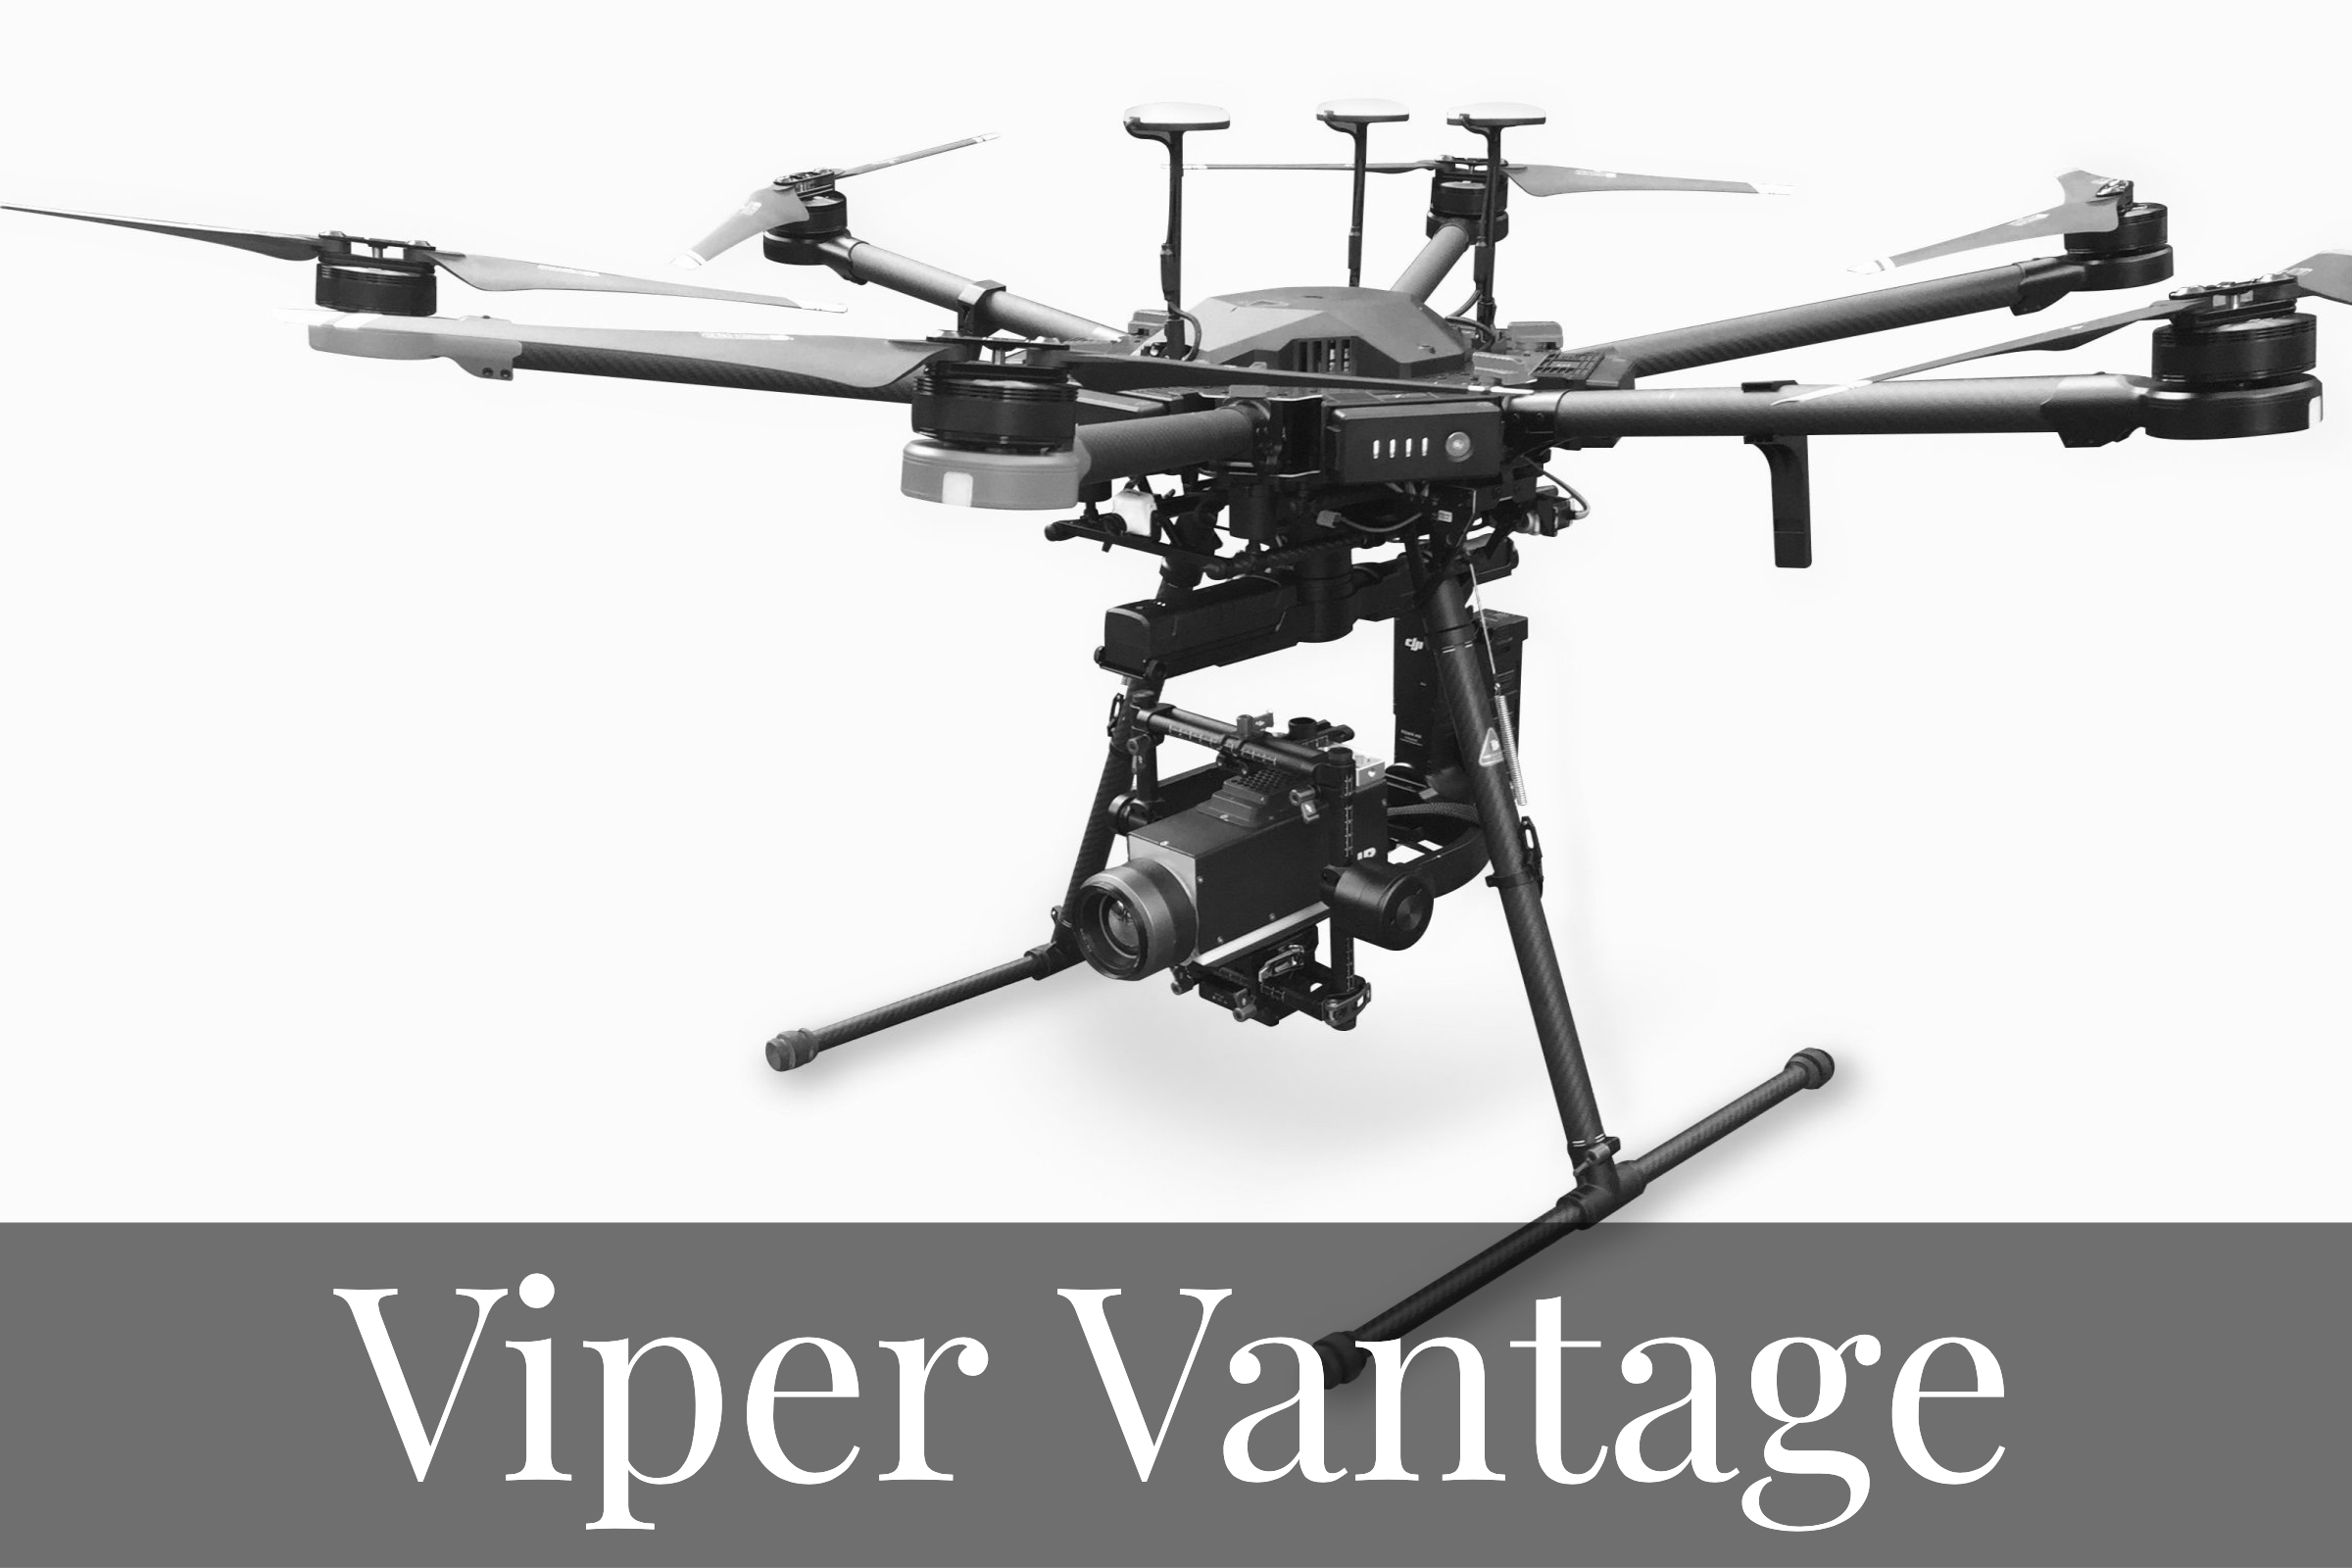 Viper Vantage top professional drone